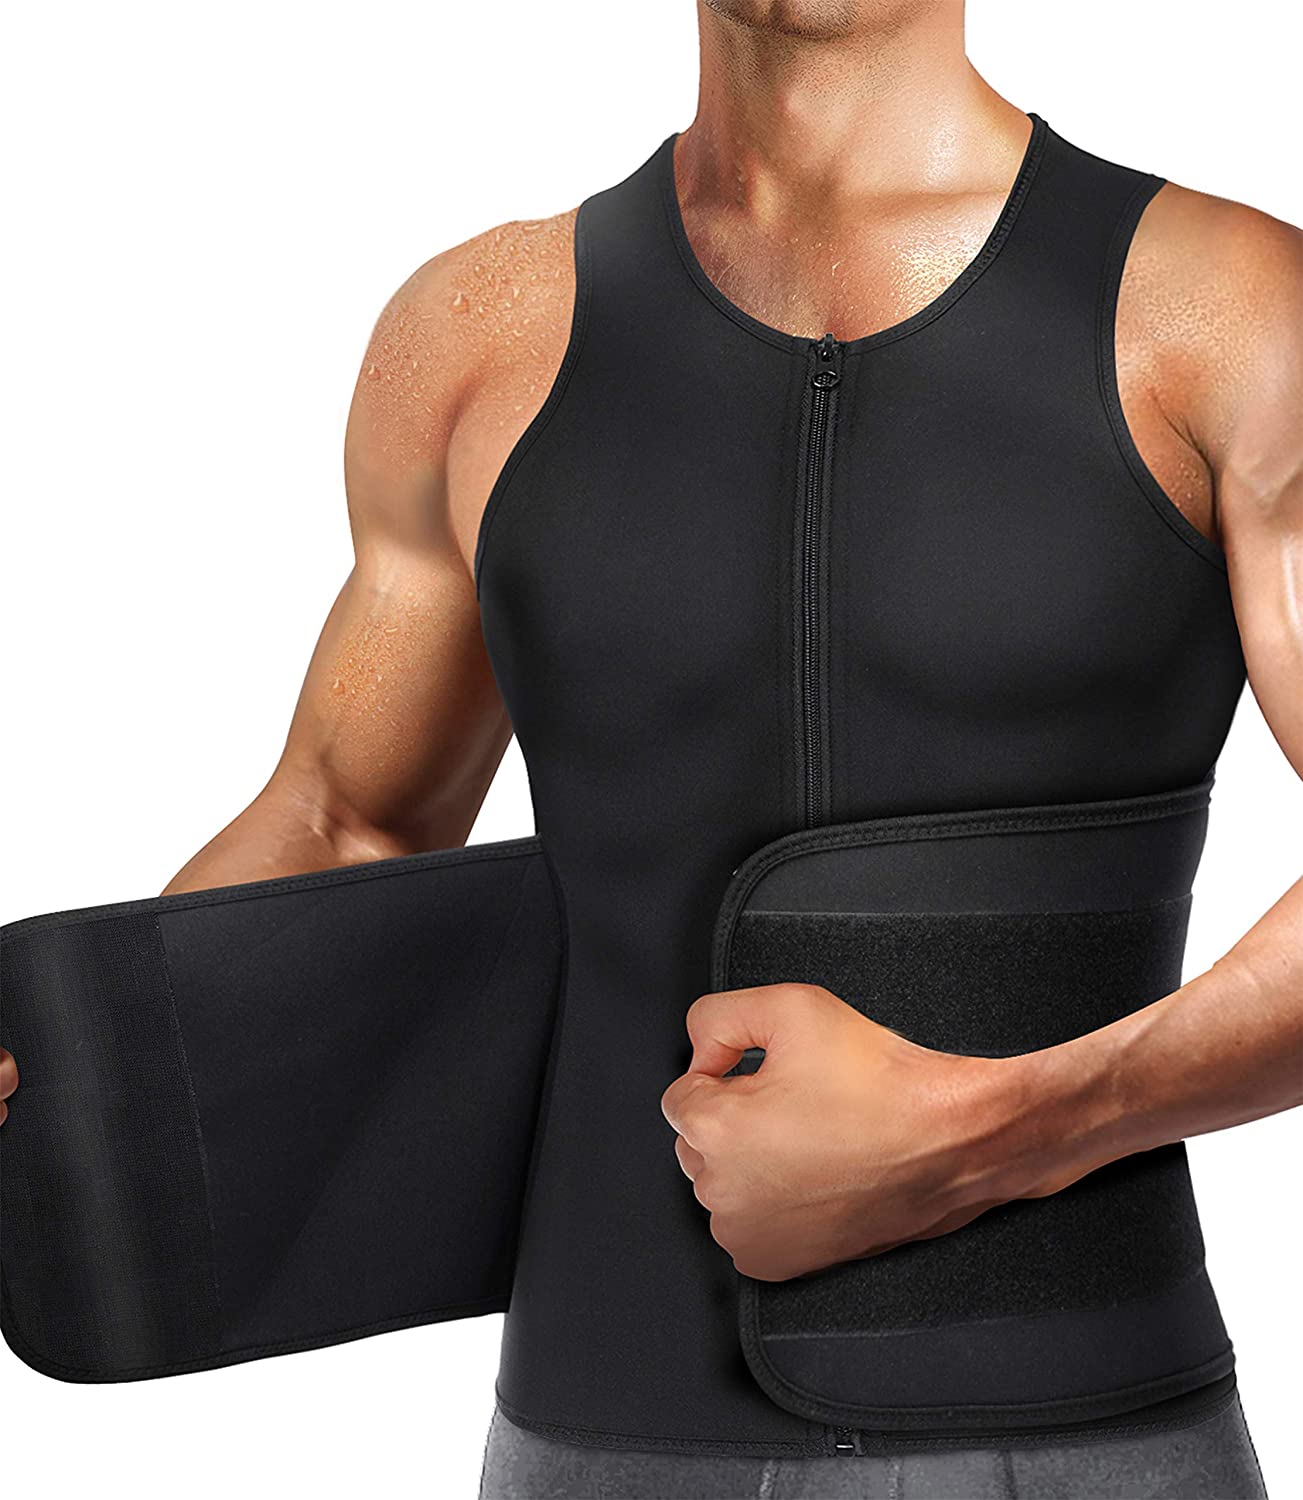 Neoprene Sauna Vest For Men Sweat Shirts Waist Trainer Body Shaper Slimming Suit 